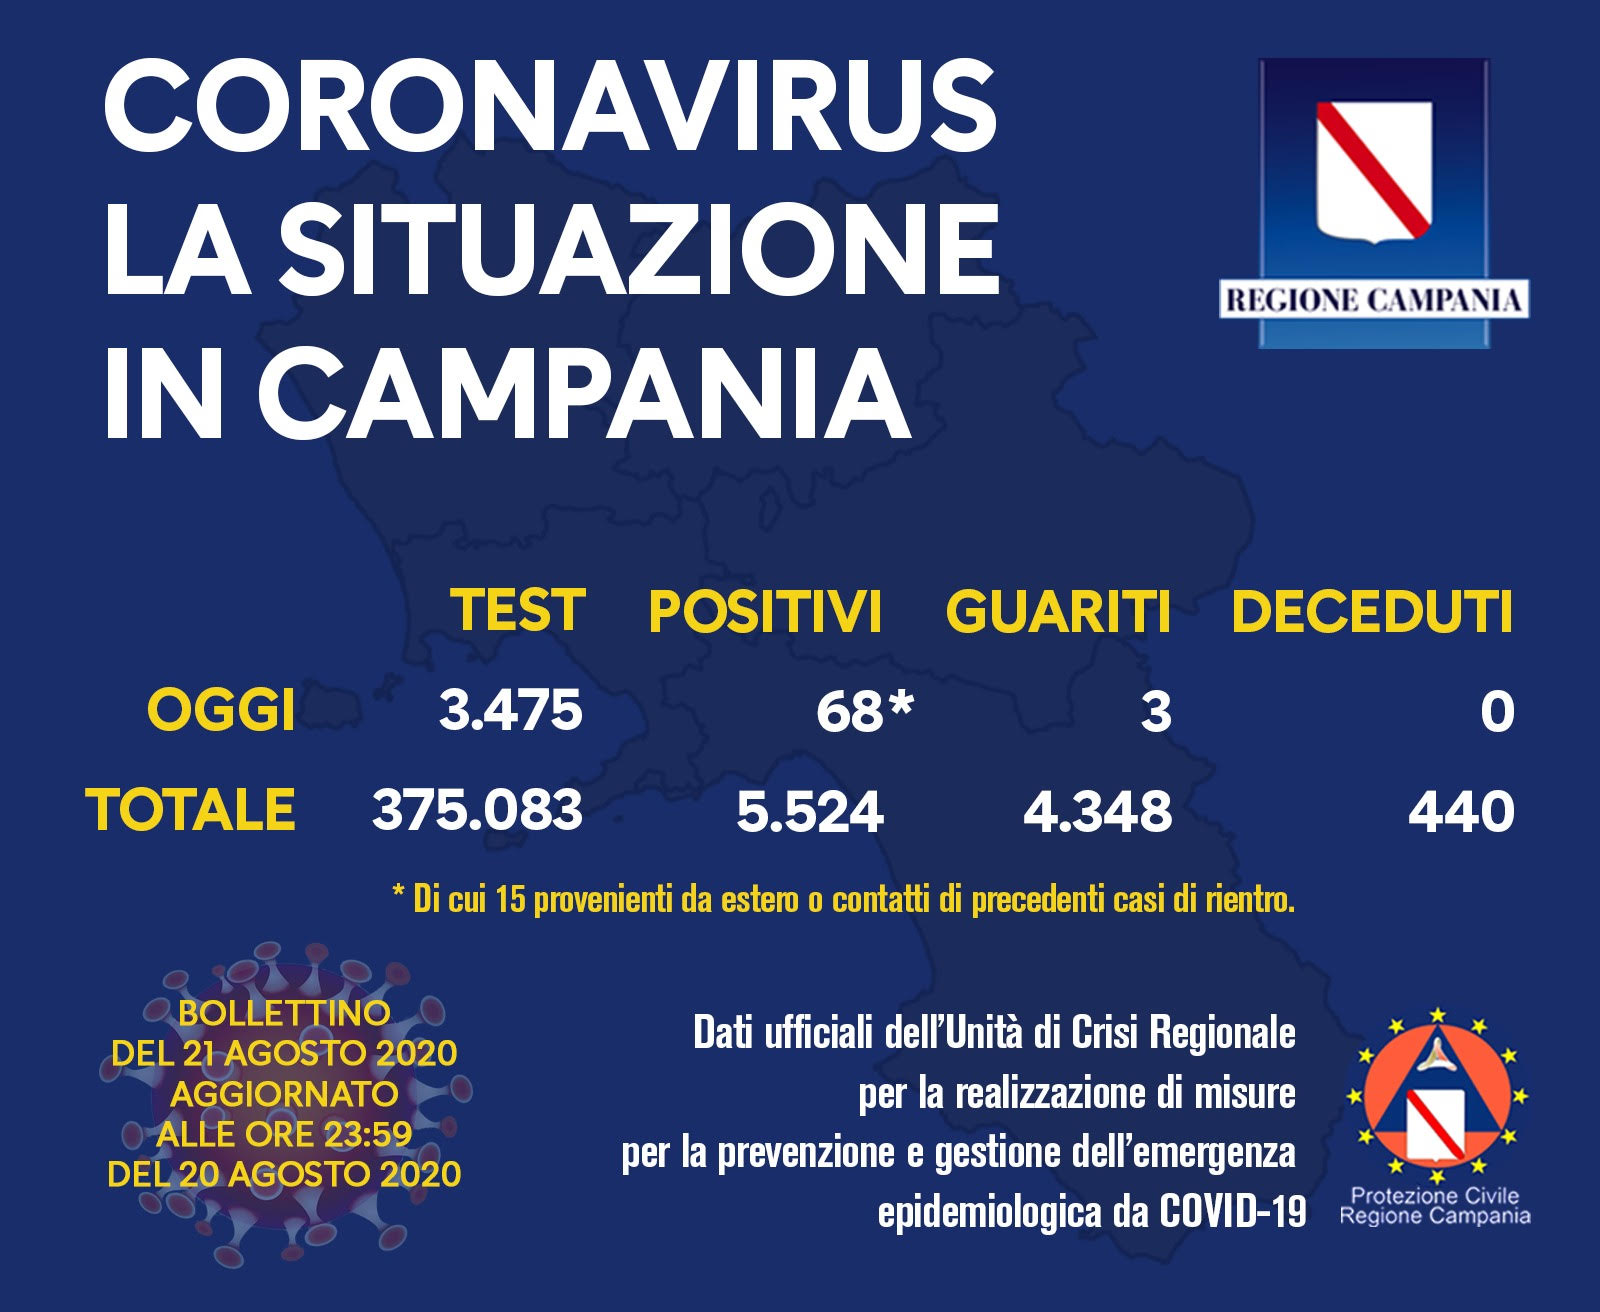 Coronavirus in Campania, i dati del 20 agosto: 68 nuovi positivi